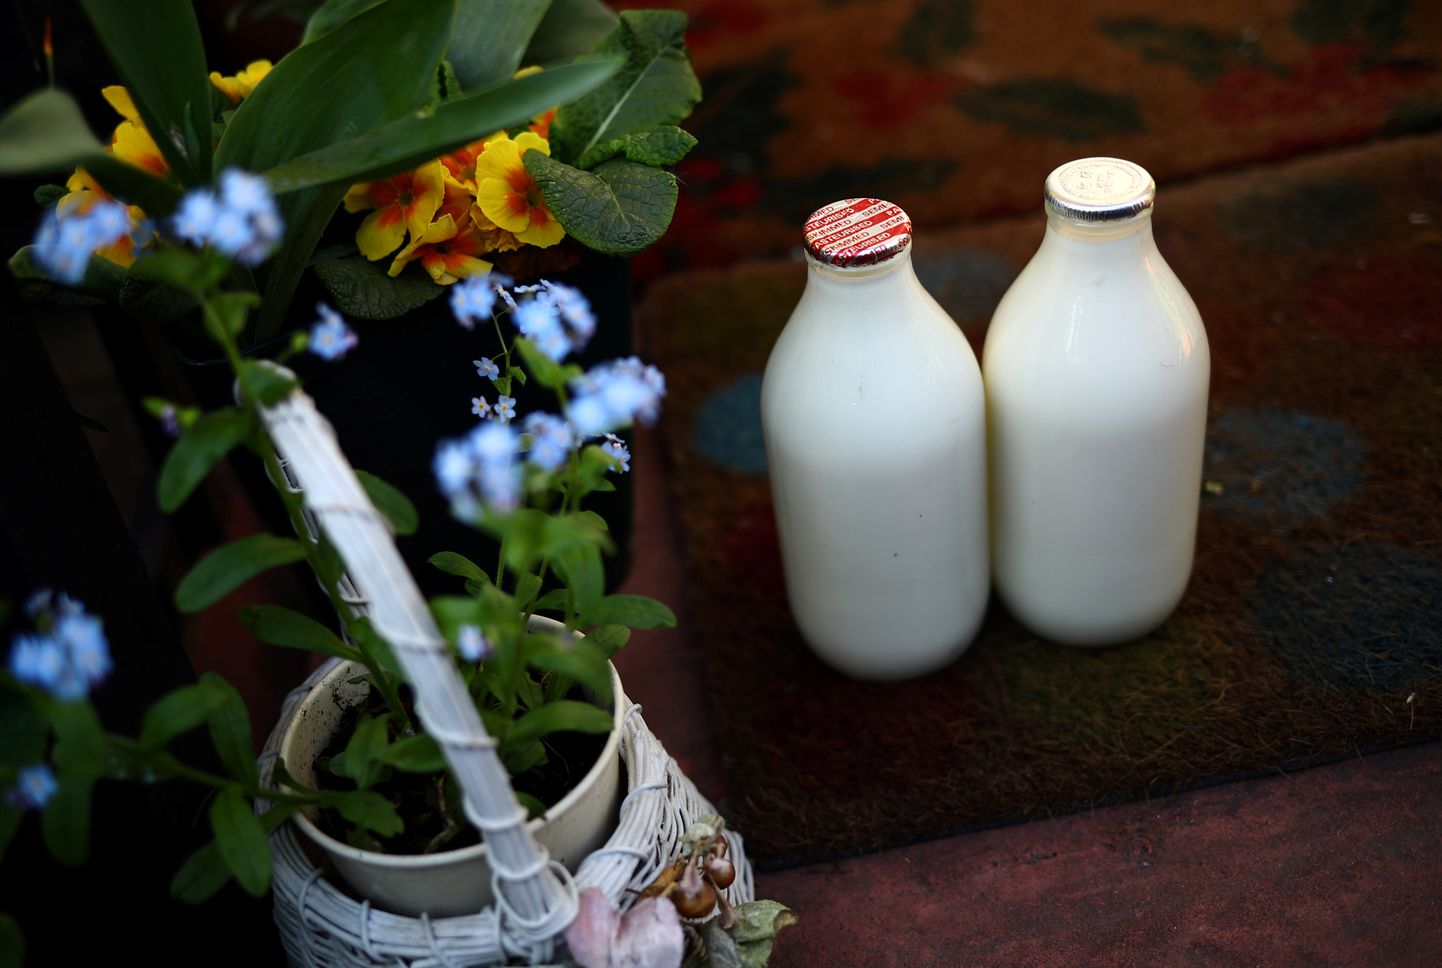 Jahedas kliimas vajasid inimesed rohkem piimas sisalduvat D-vitamiiini ja piimarasva, mistõttu sai piimatootmine olulisemaks just Põhja-Euroopas.